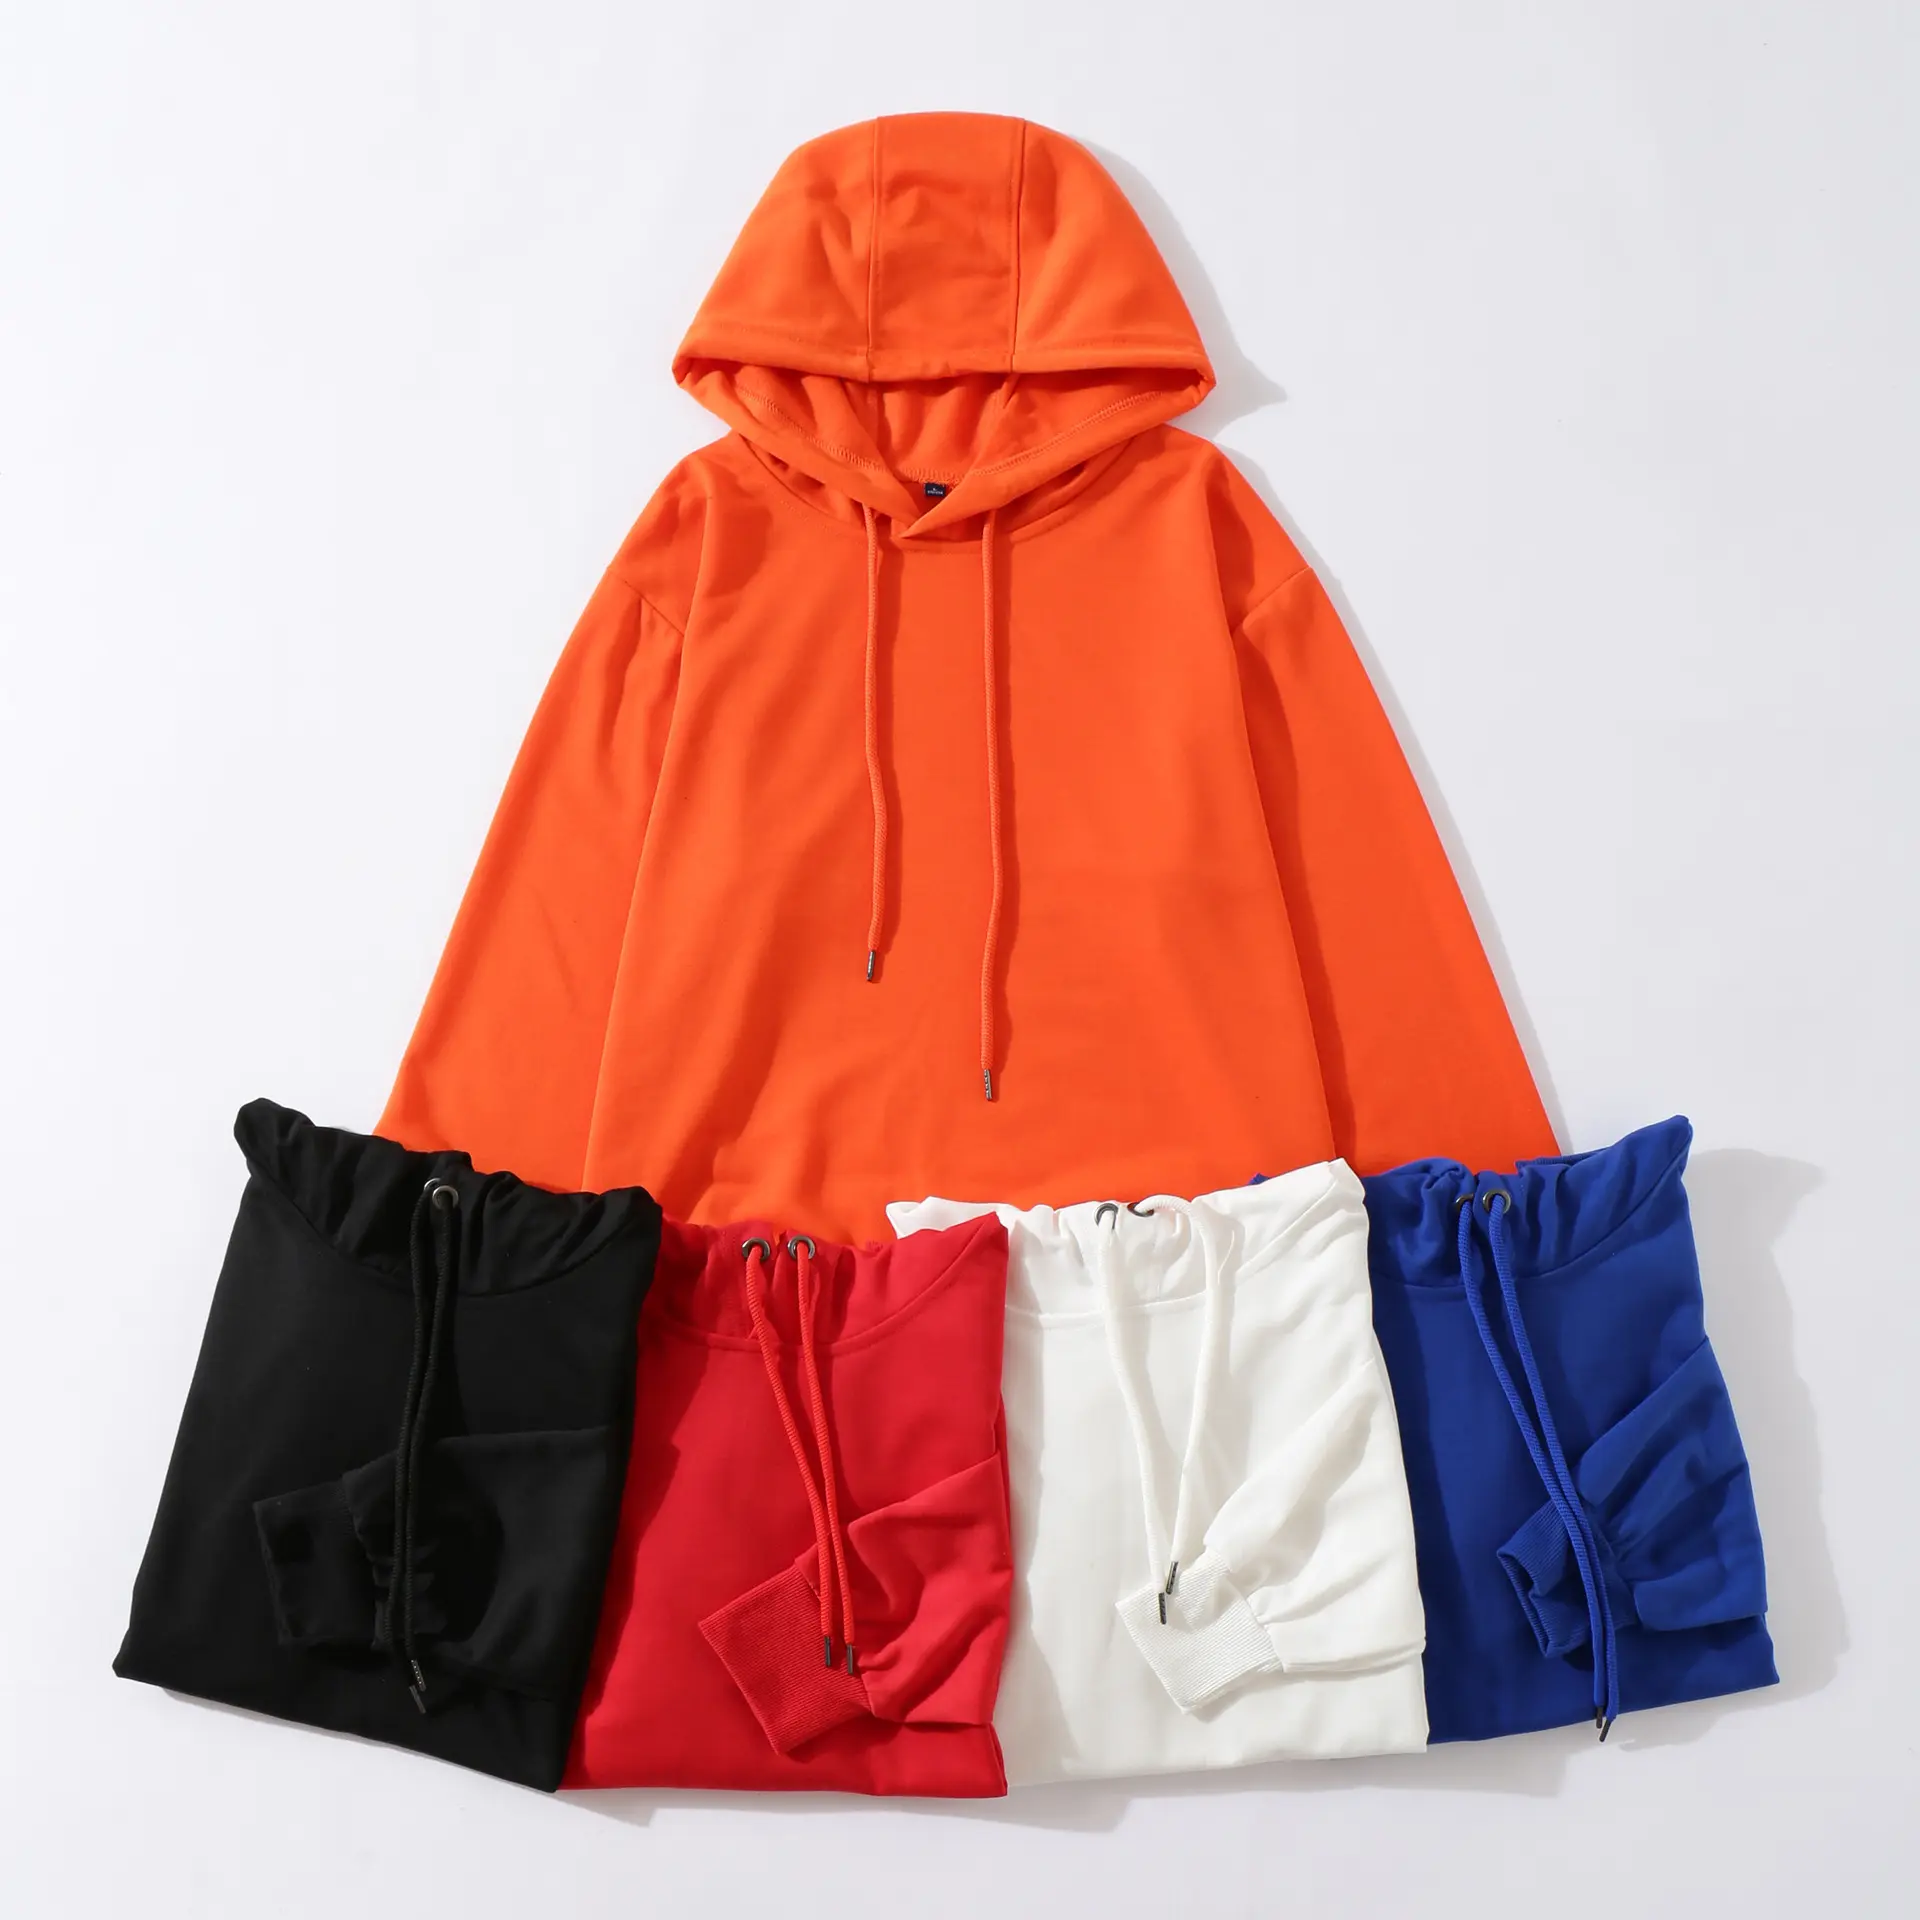 İlkbahar ve sonbahar hoodie düz renk hoodie özel uzun kollu hoodie hırka ceket baskılı logo nakış süper David giysileri